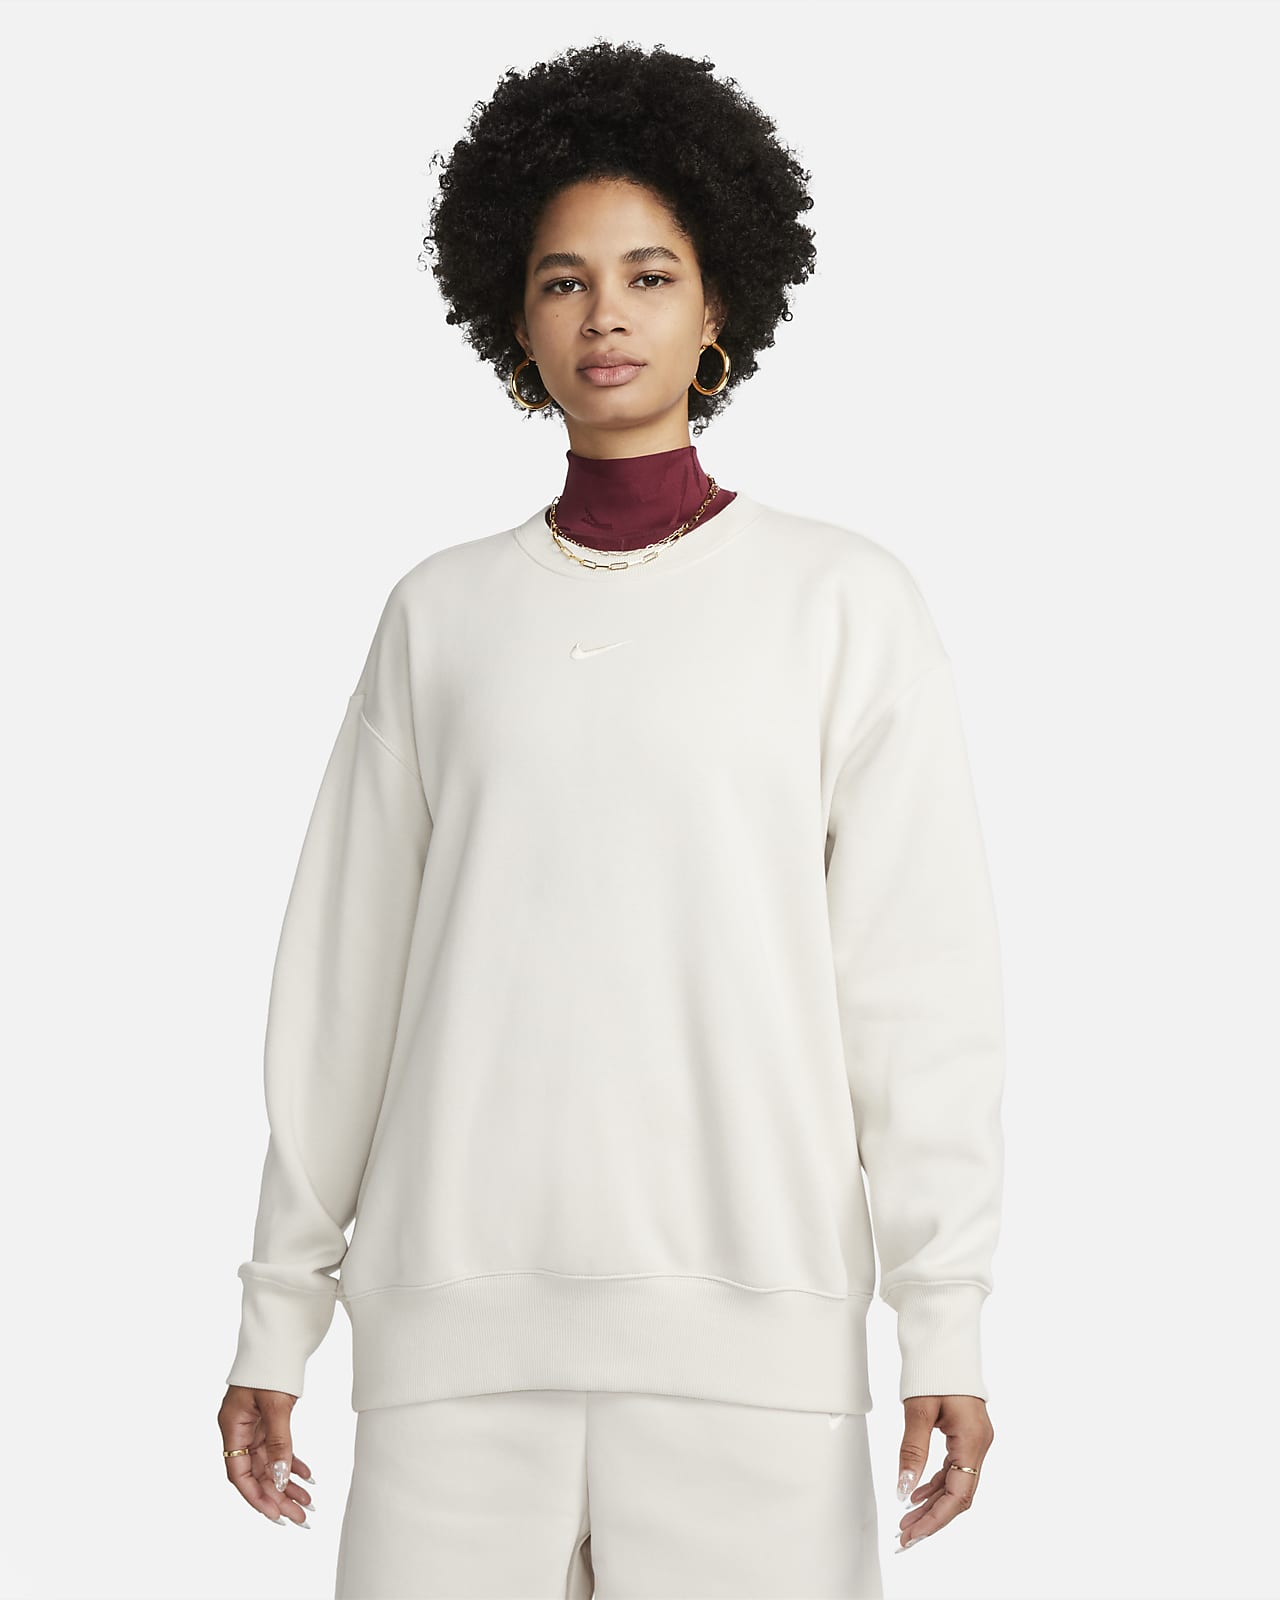 Nike Sportswear Phoenix Fleece túlméretes, kerek nyakkivágású női pulóver